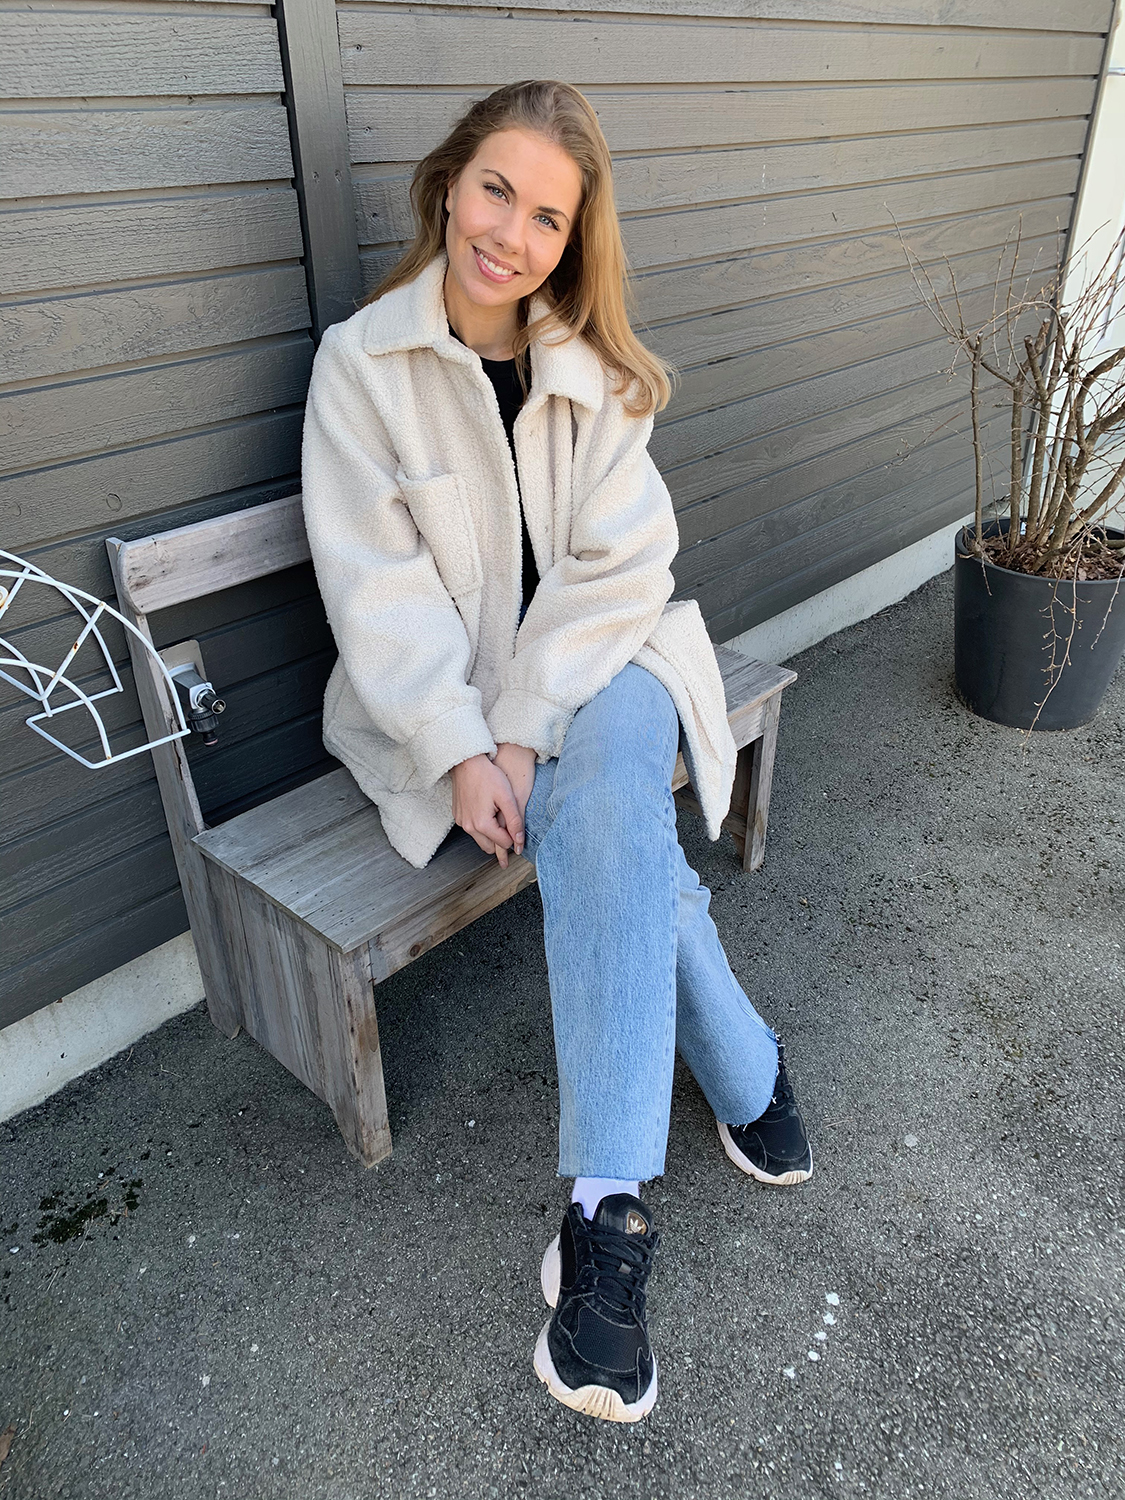 Camilla Lindström har blondt hår og har på seg en hvit jakke, svart genser, Adidas joggesko og blå jeans. Hun sitter på en liten benk og smiler.